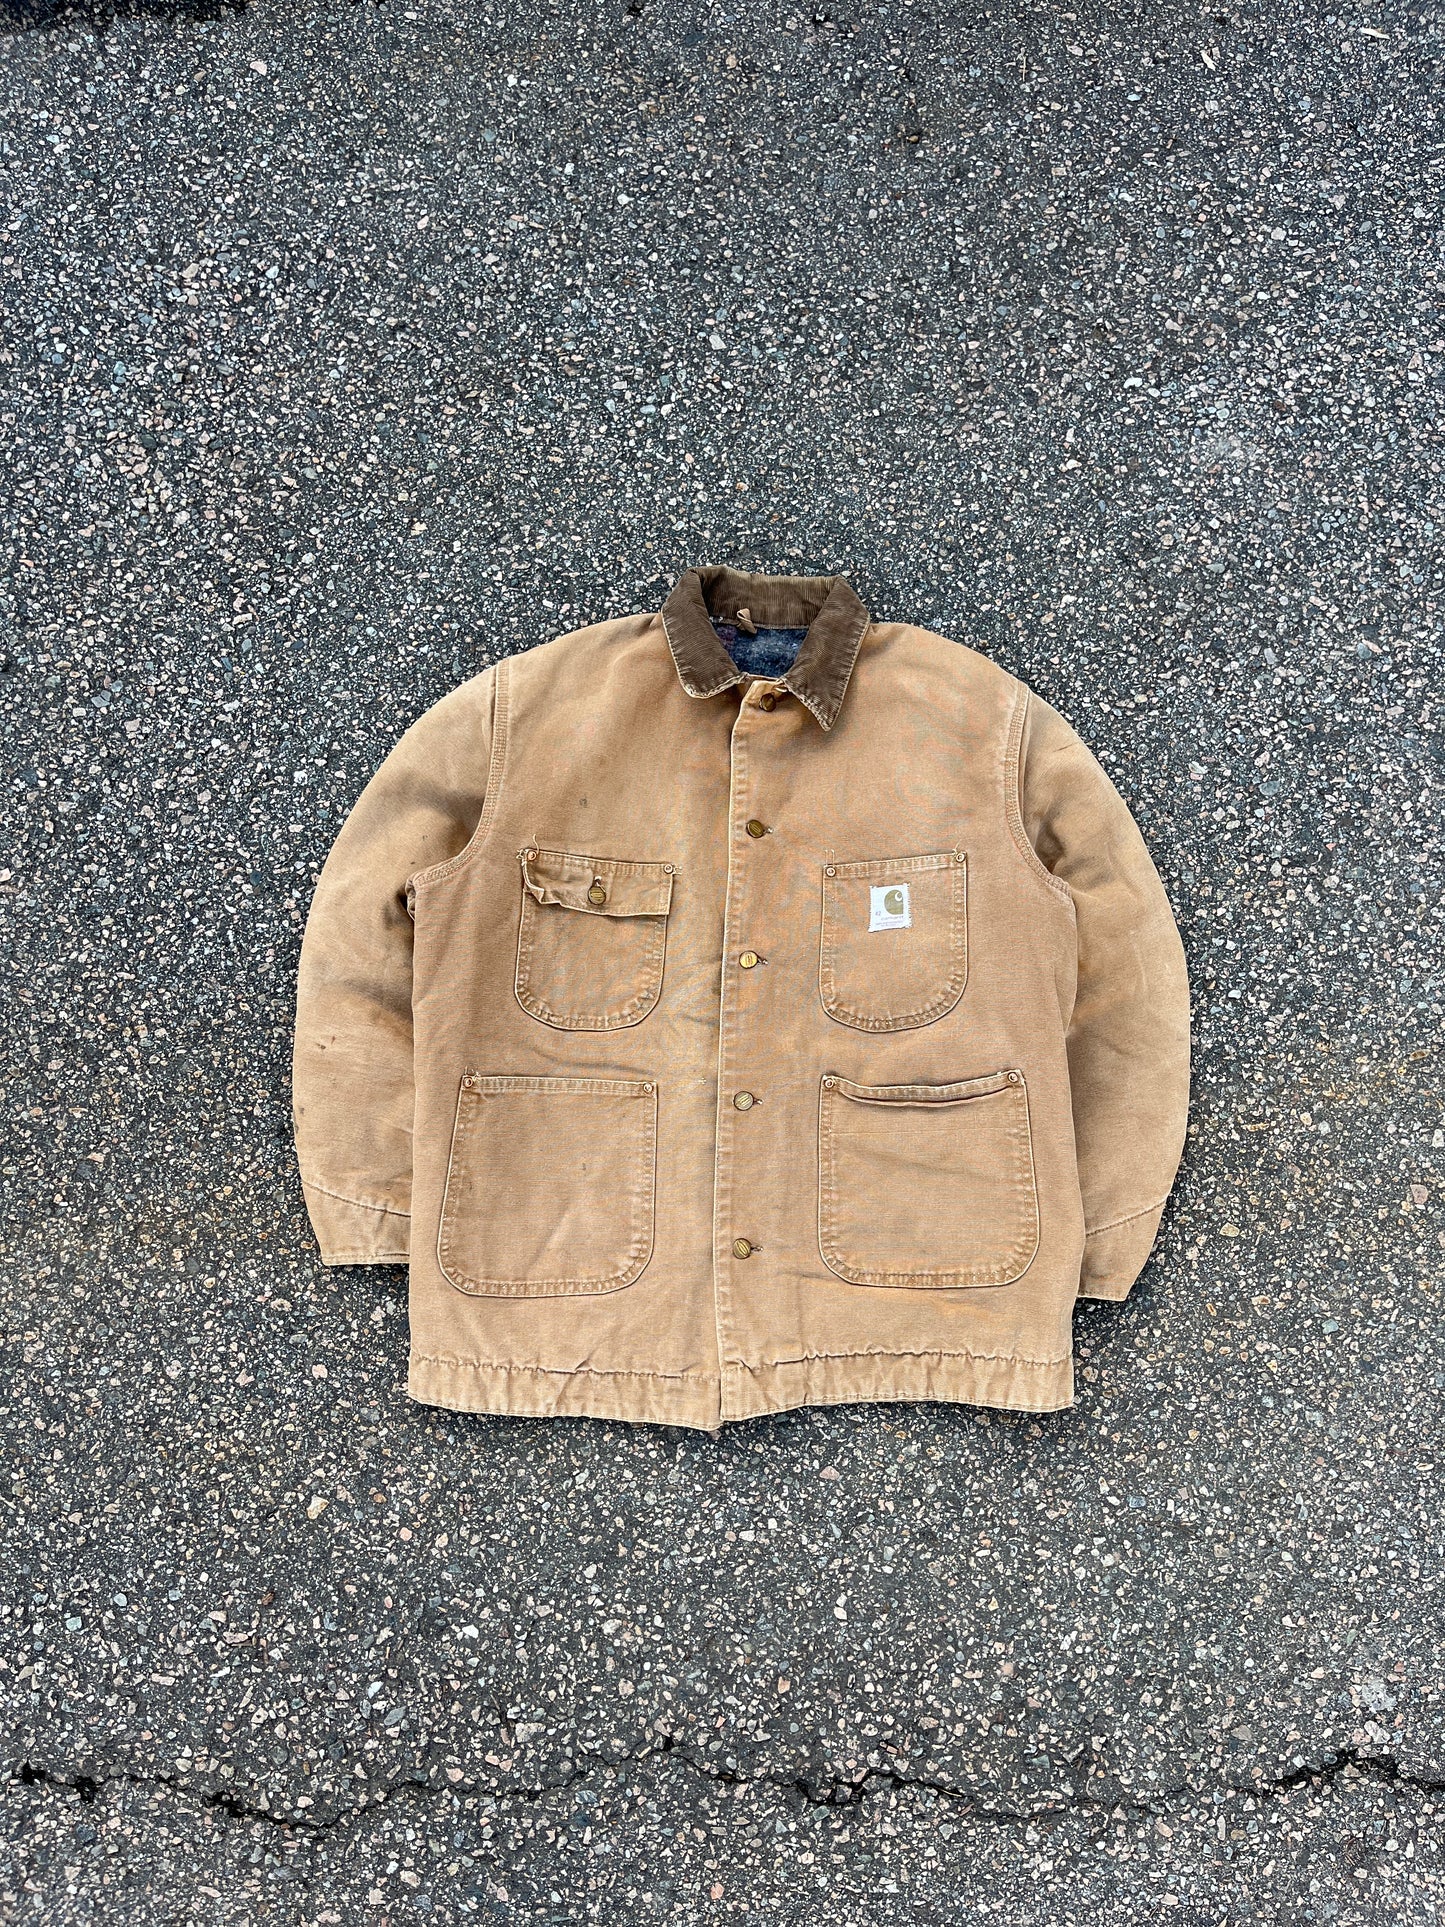 70’s Faded Brown Carhartt Chore Jacket - Medium